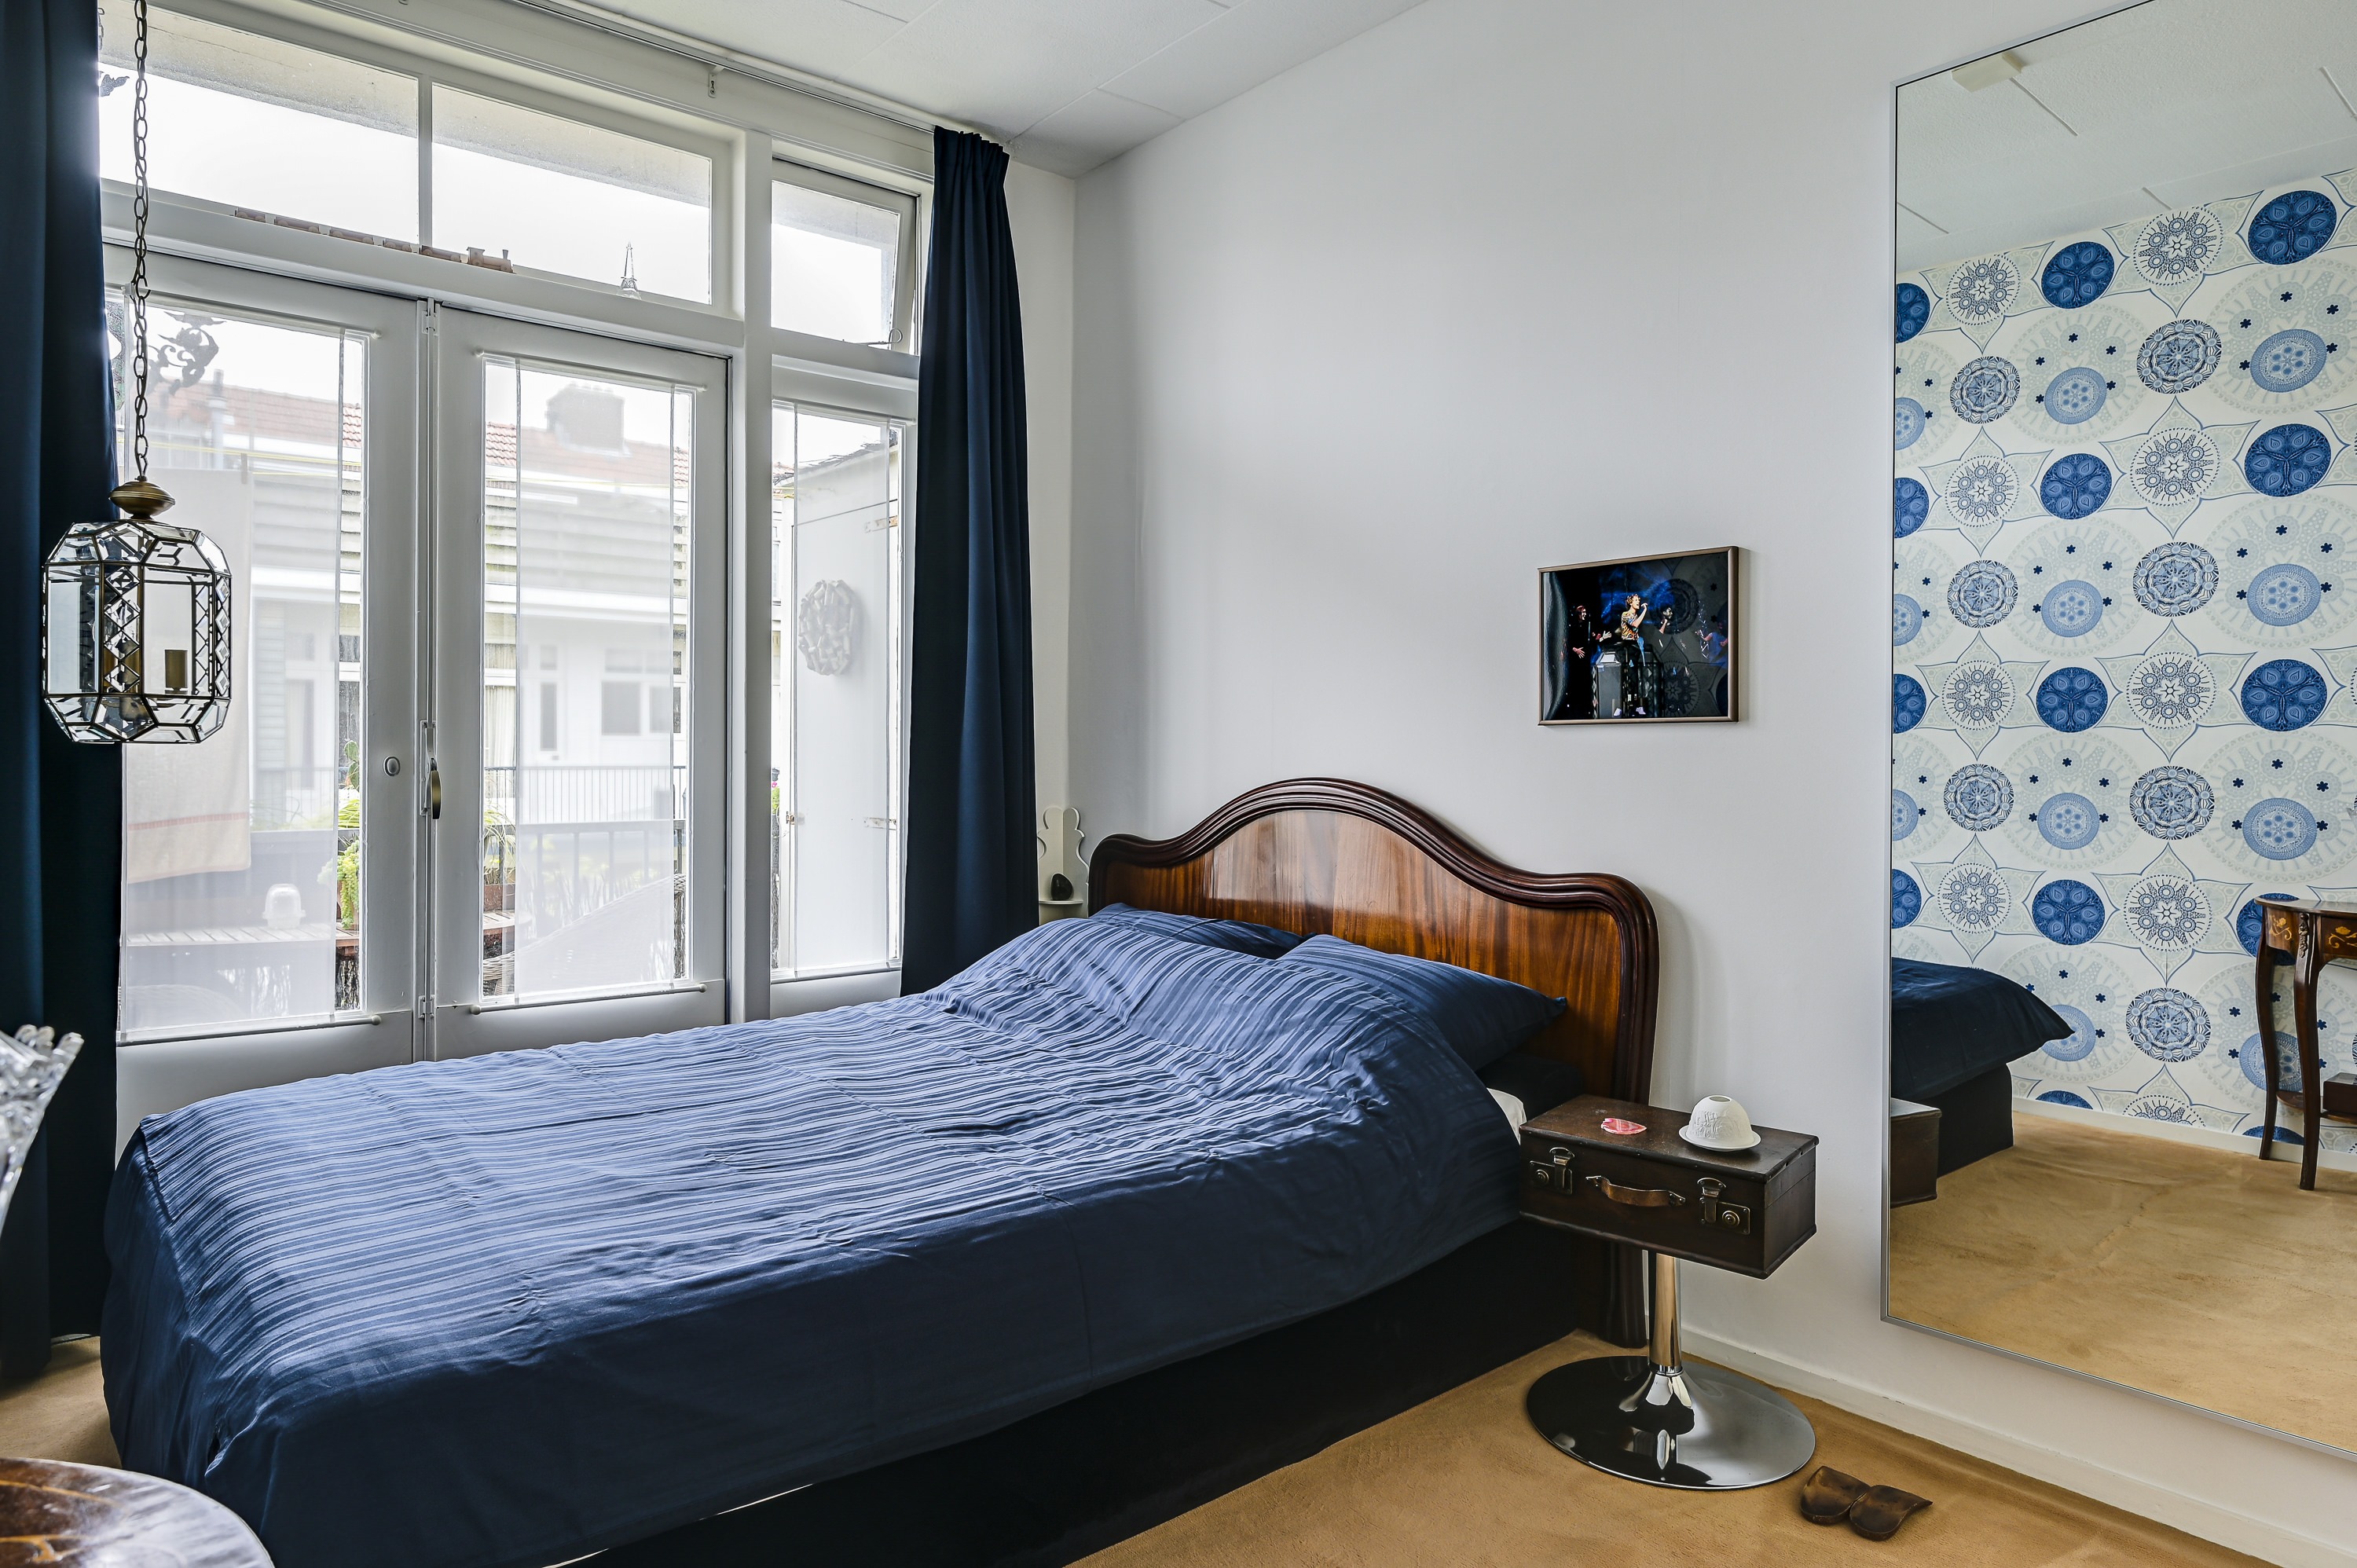 Woning / appartement - Amsterdam - Piet Gijzenbrugstraat 13